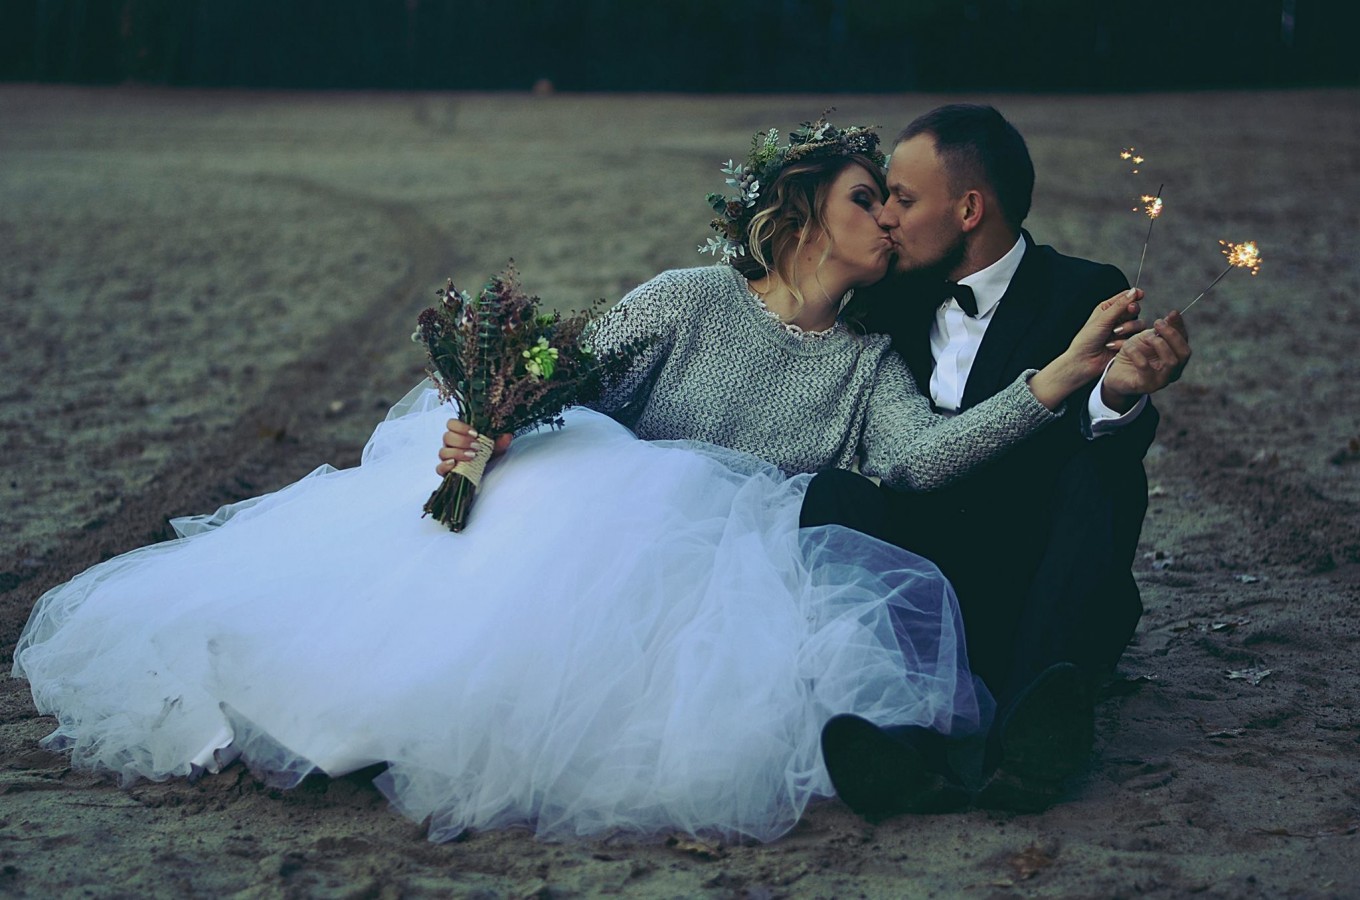 zdjęcia wroclaw fotograf aleksandra-lukow portfolio zdjecia slubne inspiracje wesele plener slubny sesja slubna